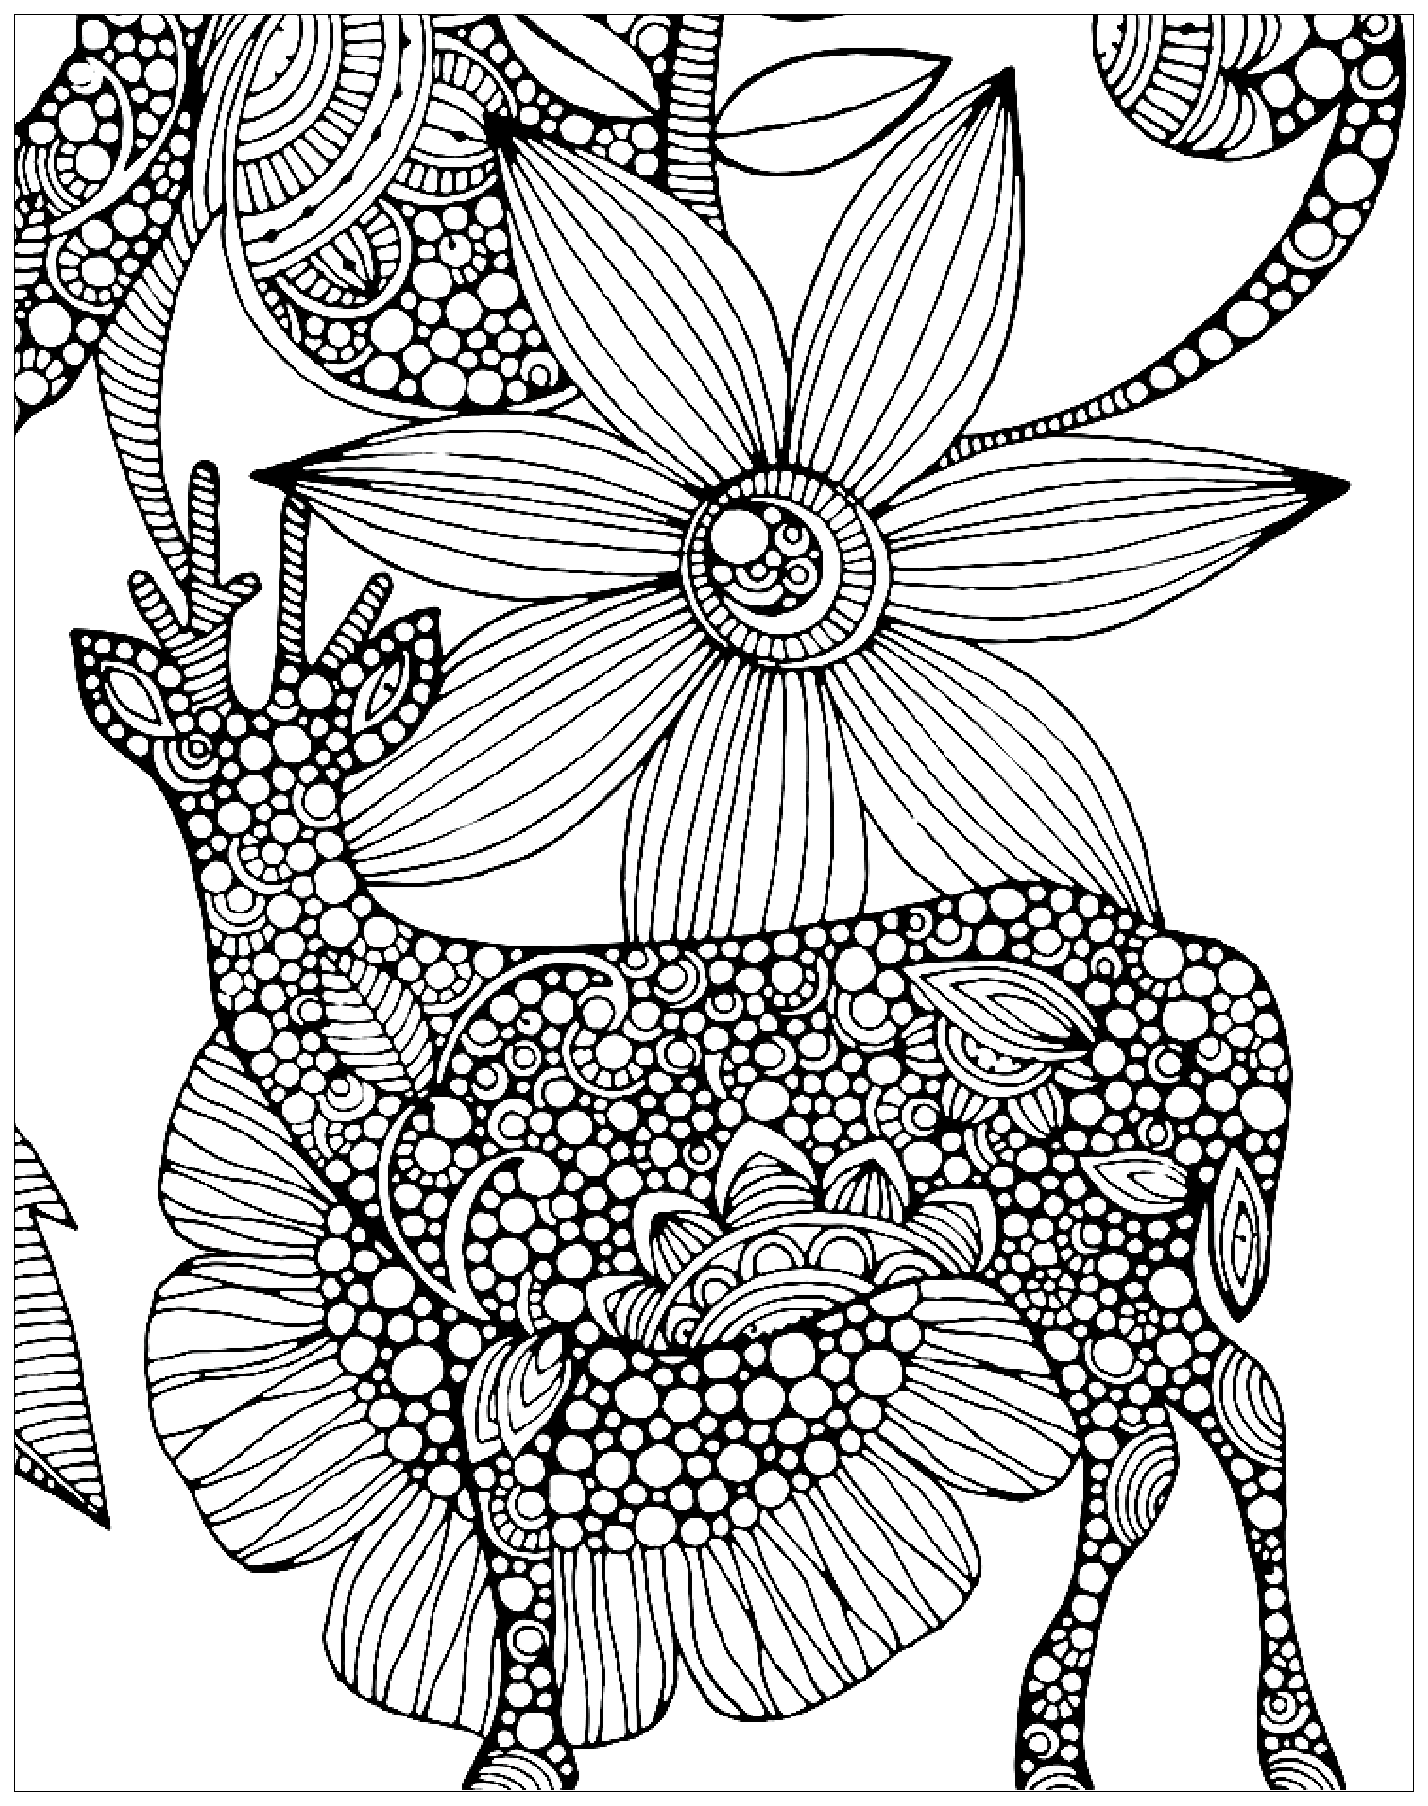 Deer and big flower drawing